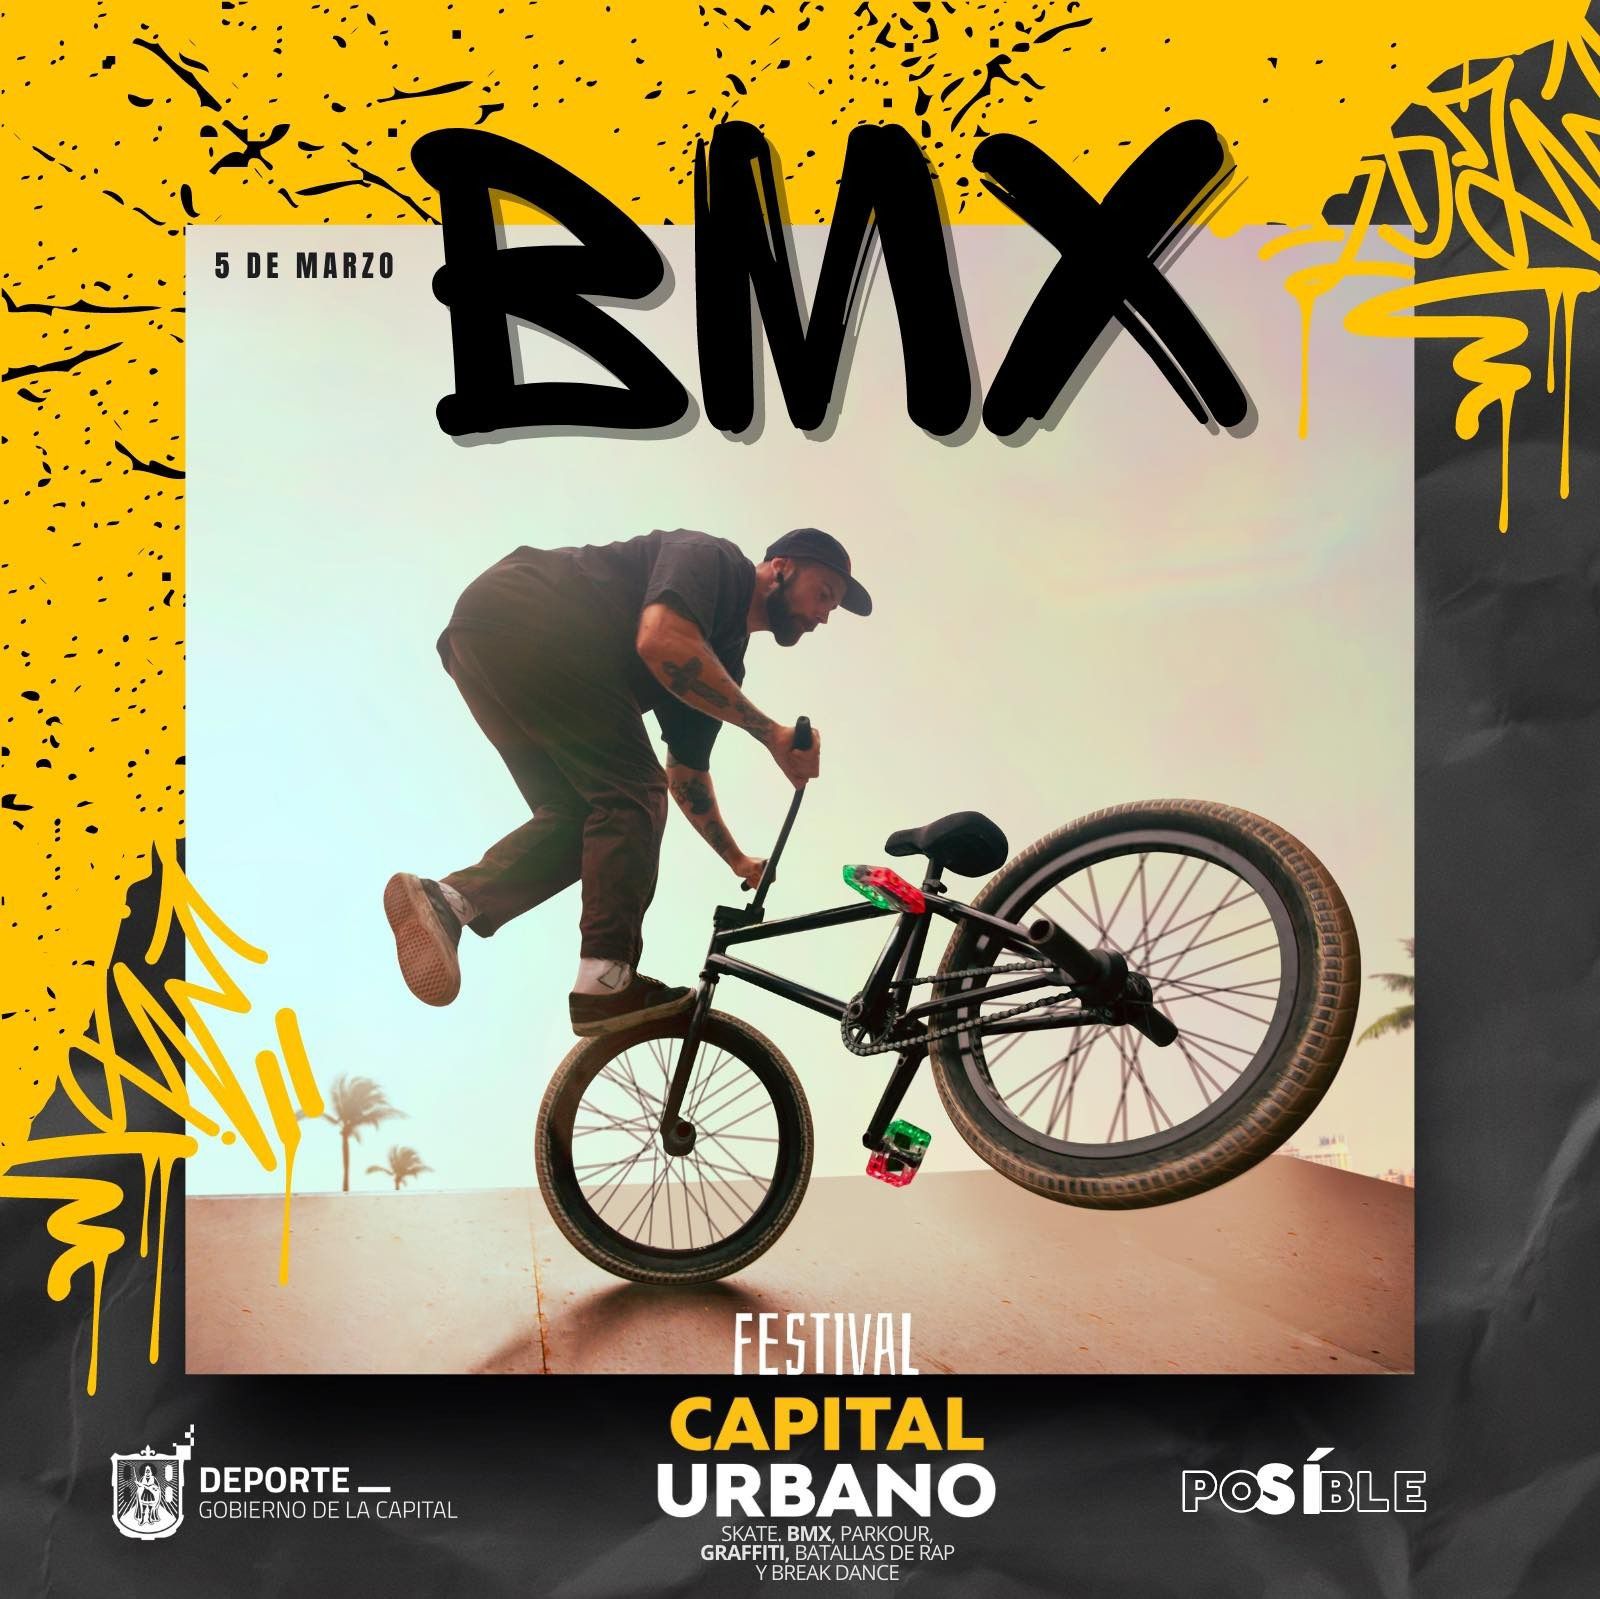  Este domingo 5 de marzo, el Gobierno de la Capital pone en marcha el Festival Capital Urbano con la disciplina de BMX